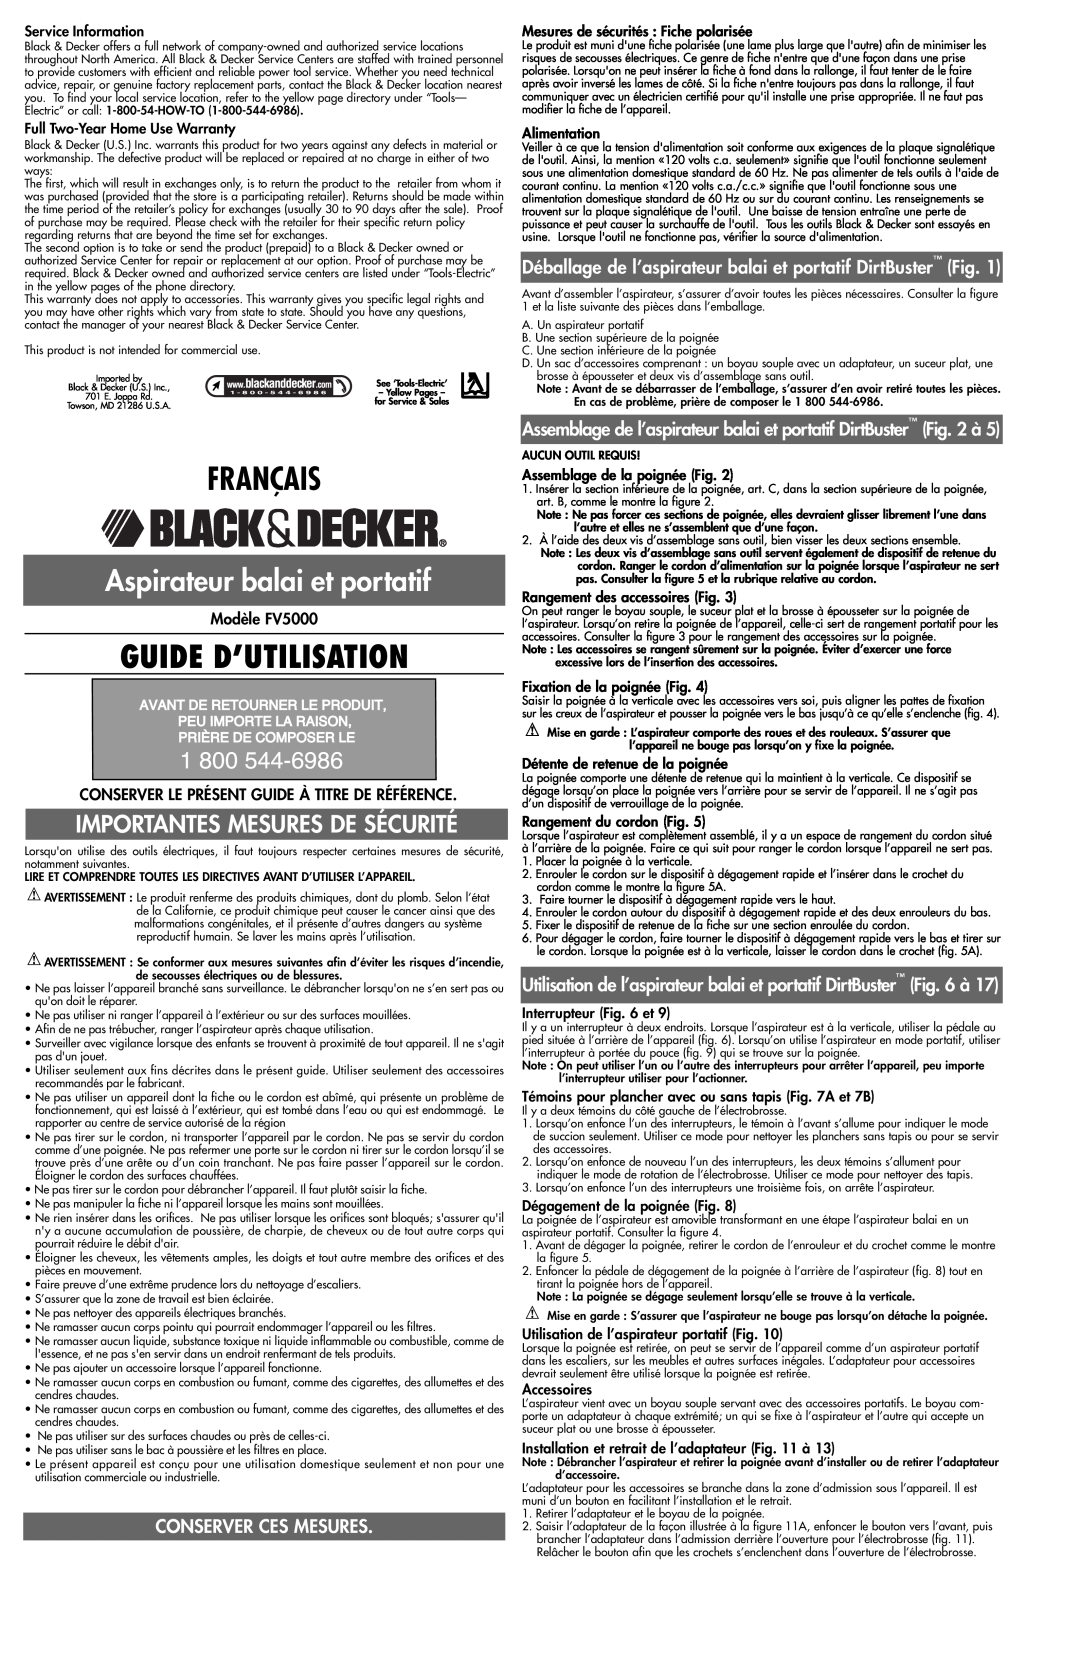 Black & Decker 243920-00 Français, Guide D’Utilisation, Aspirateur balai et portatif, Conserver Ces Mesures, Modèle FV5000 